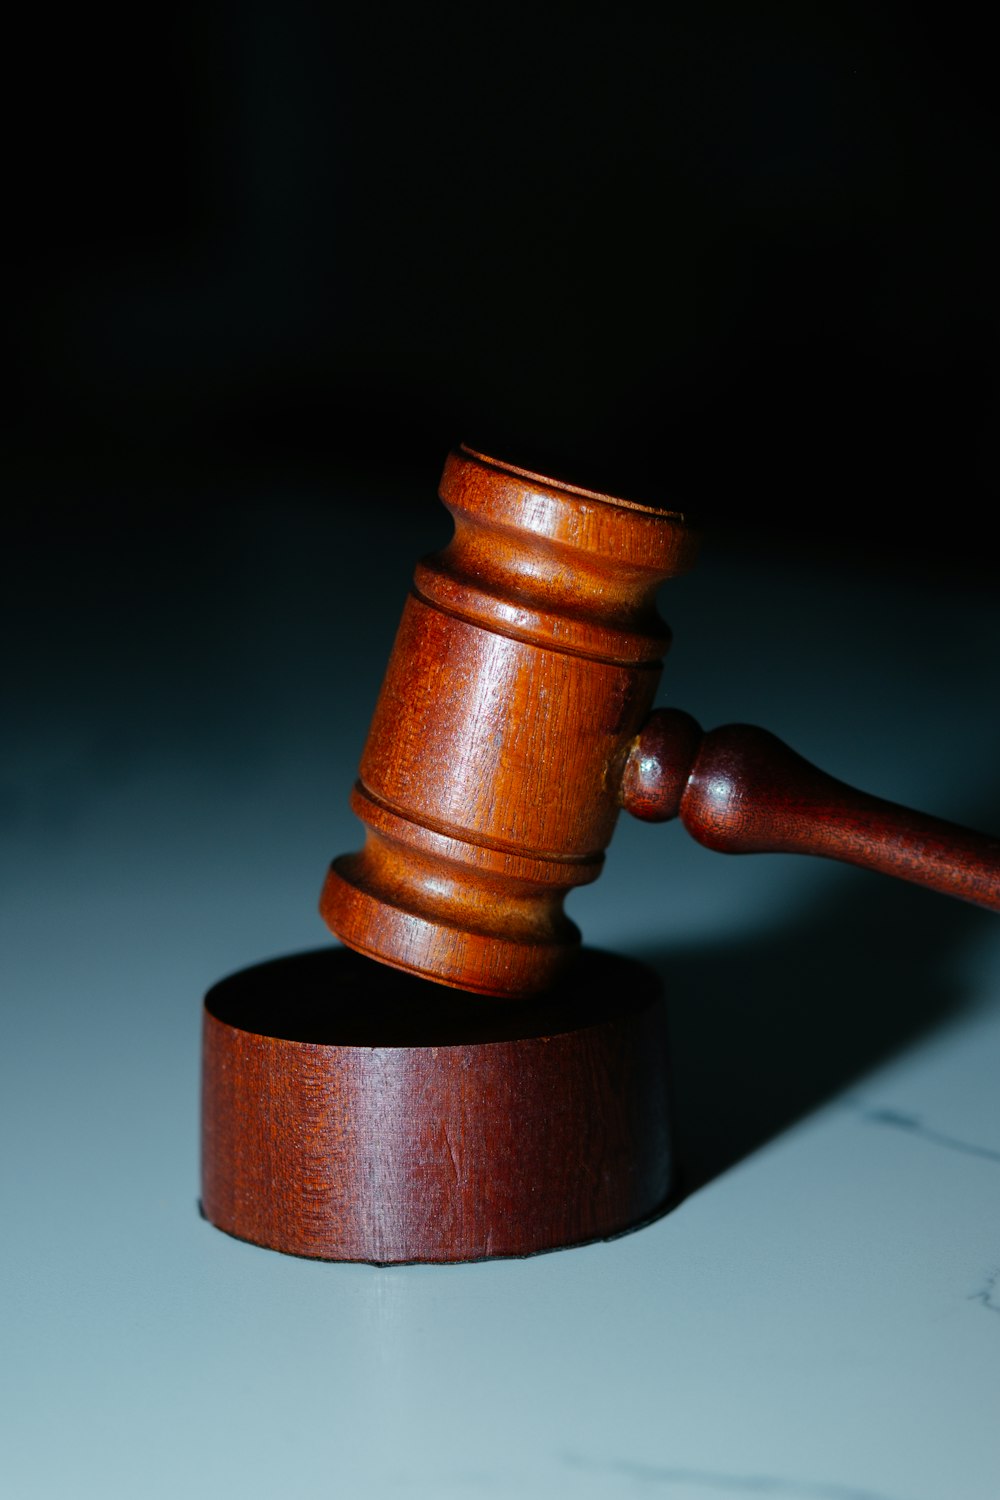 Un martello di legno del giudice in cima a un tavolo foto – Corte suprema  Immagine gratuita su Unsplash